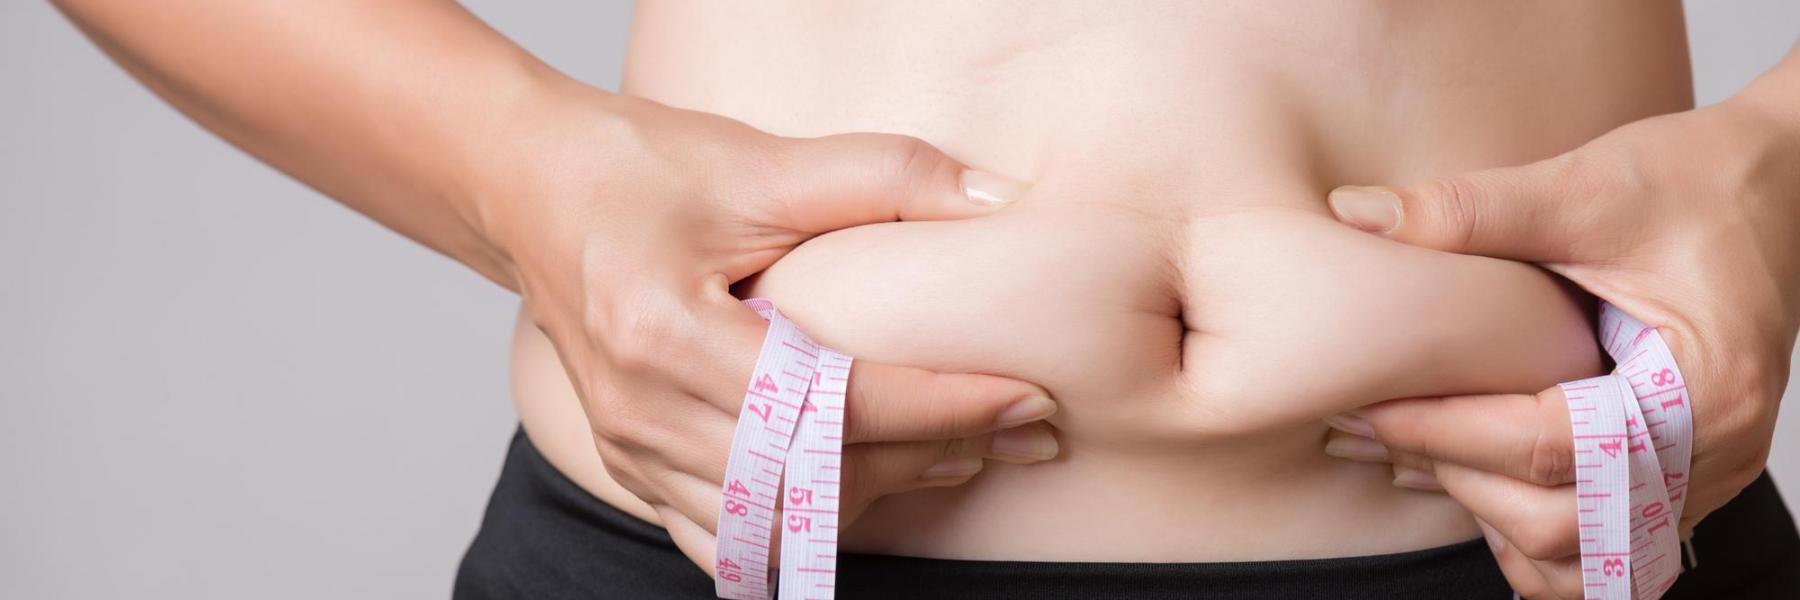 ارتفاع نسبة الدهون في الجسم